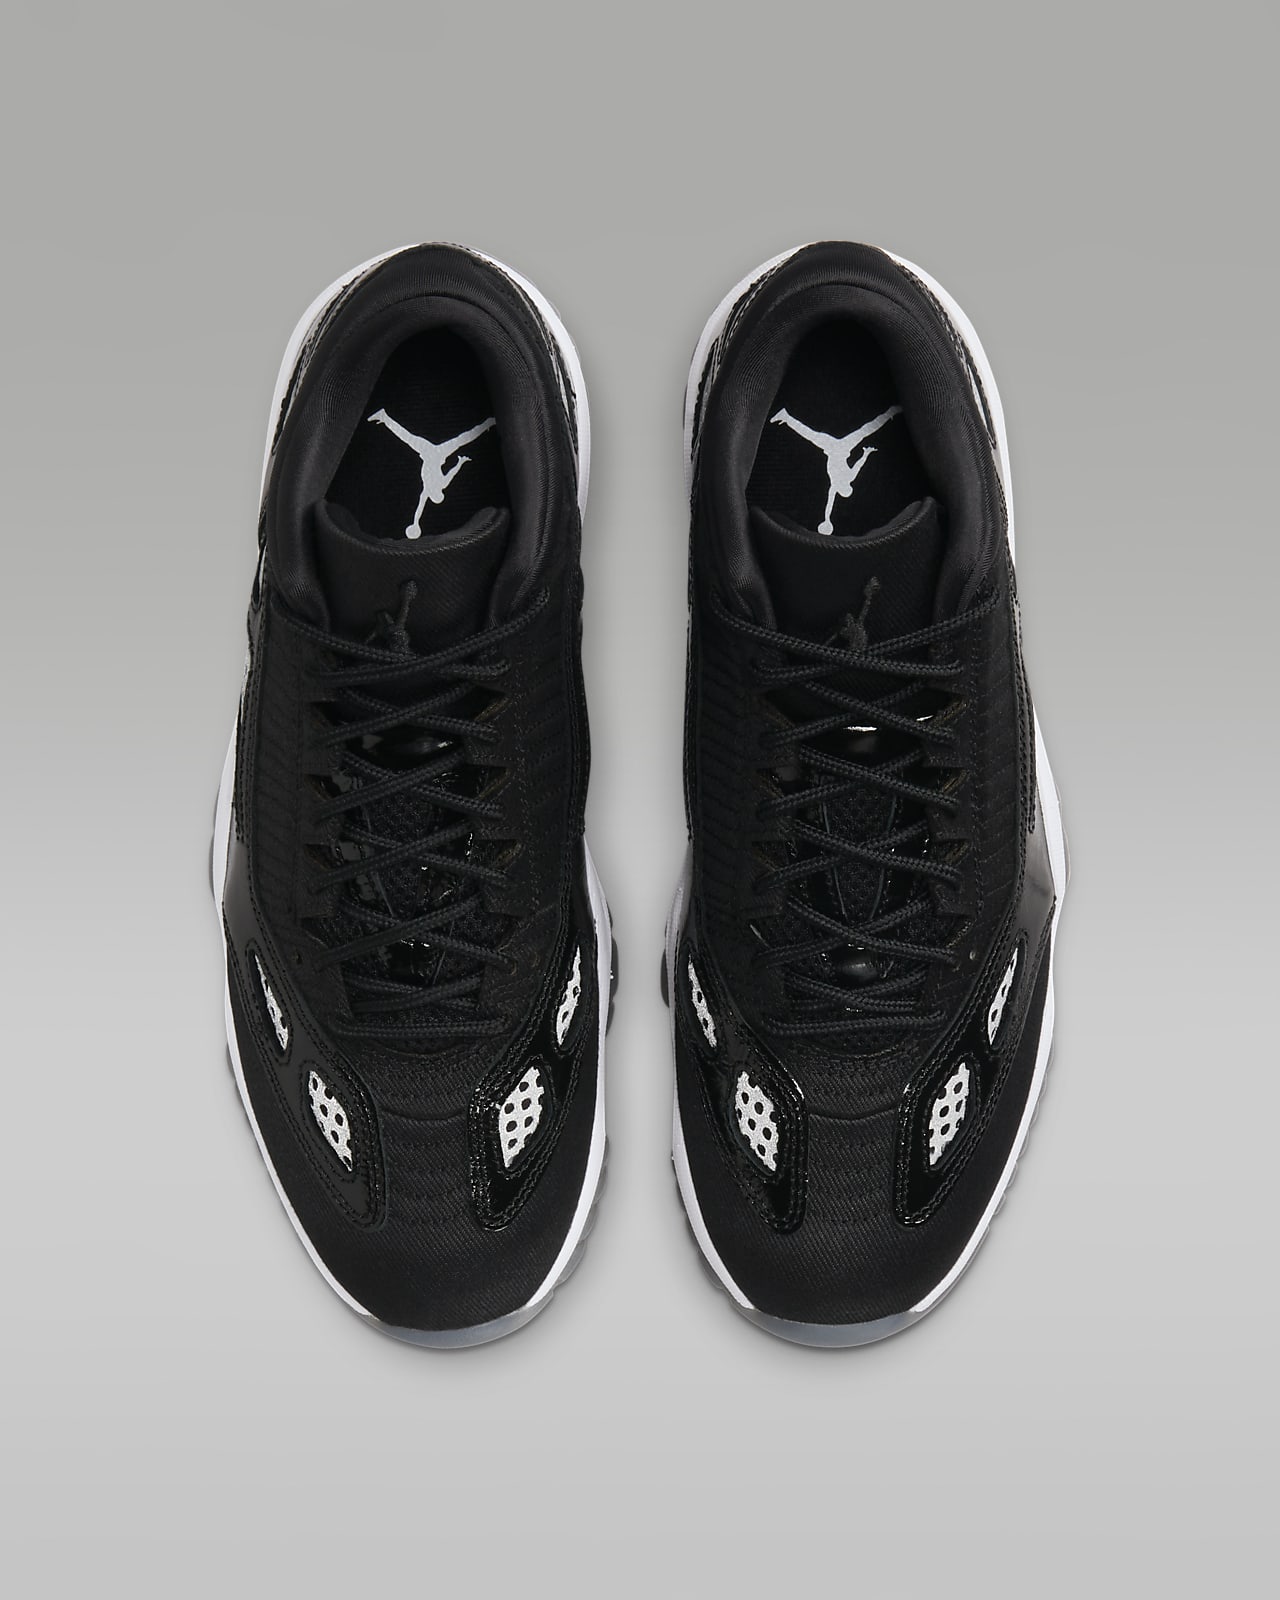 Air Jordan 11 Low: Nike Air Jordan 11 Low IE Black/White shoes